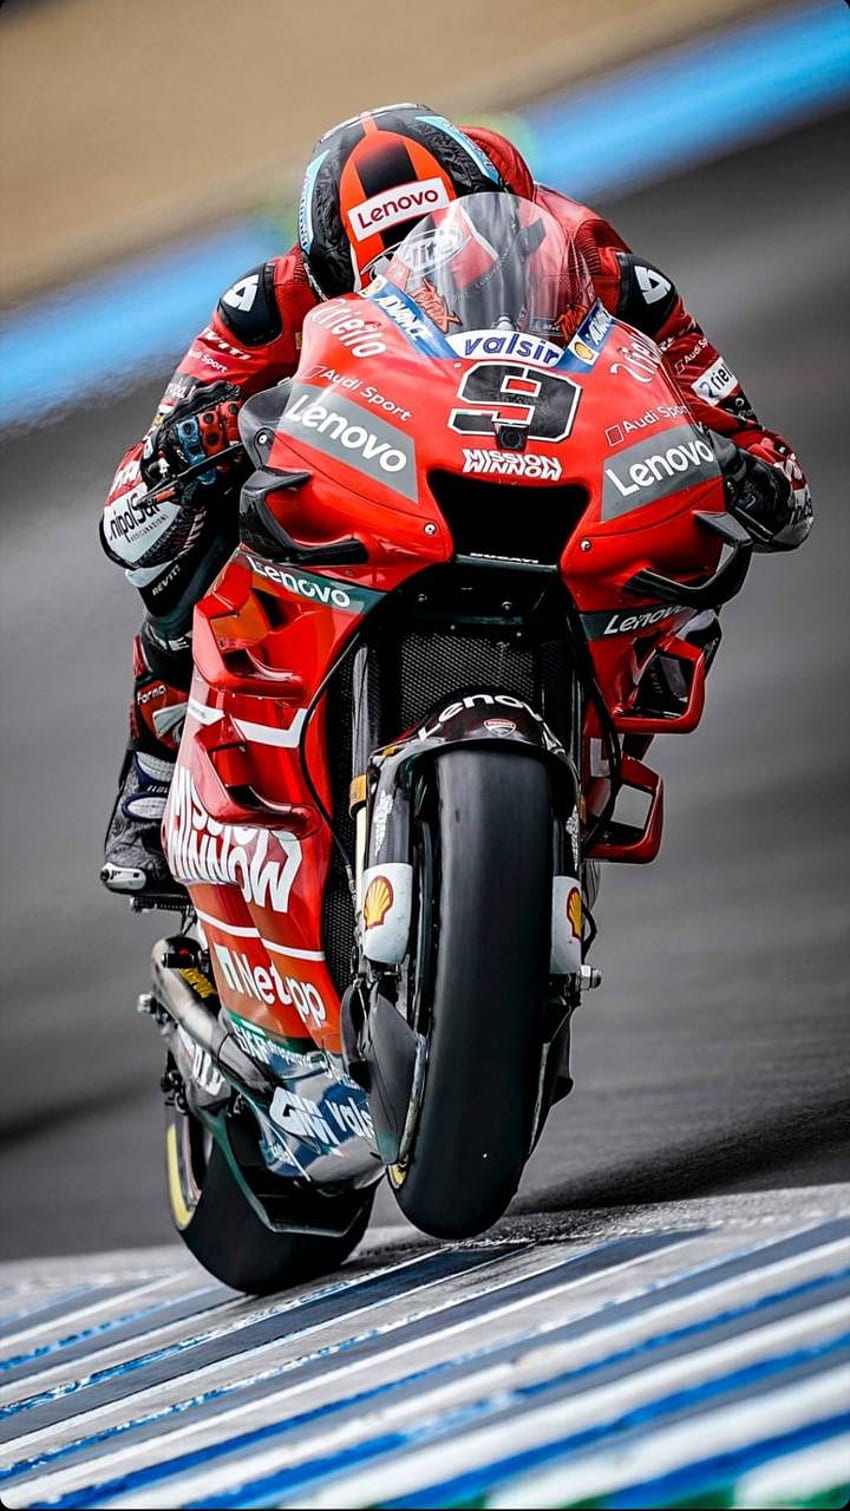 Motogp, MotoGP Ducati wallpaper ponsel HD